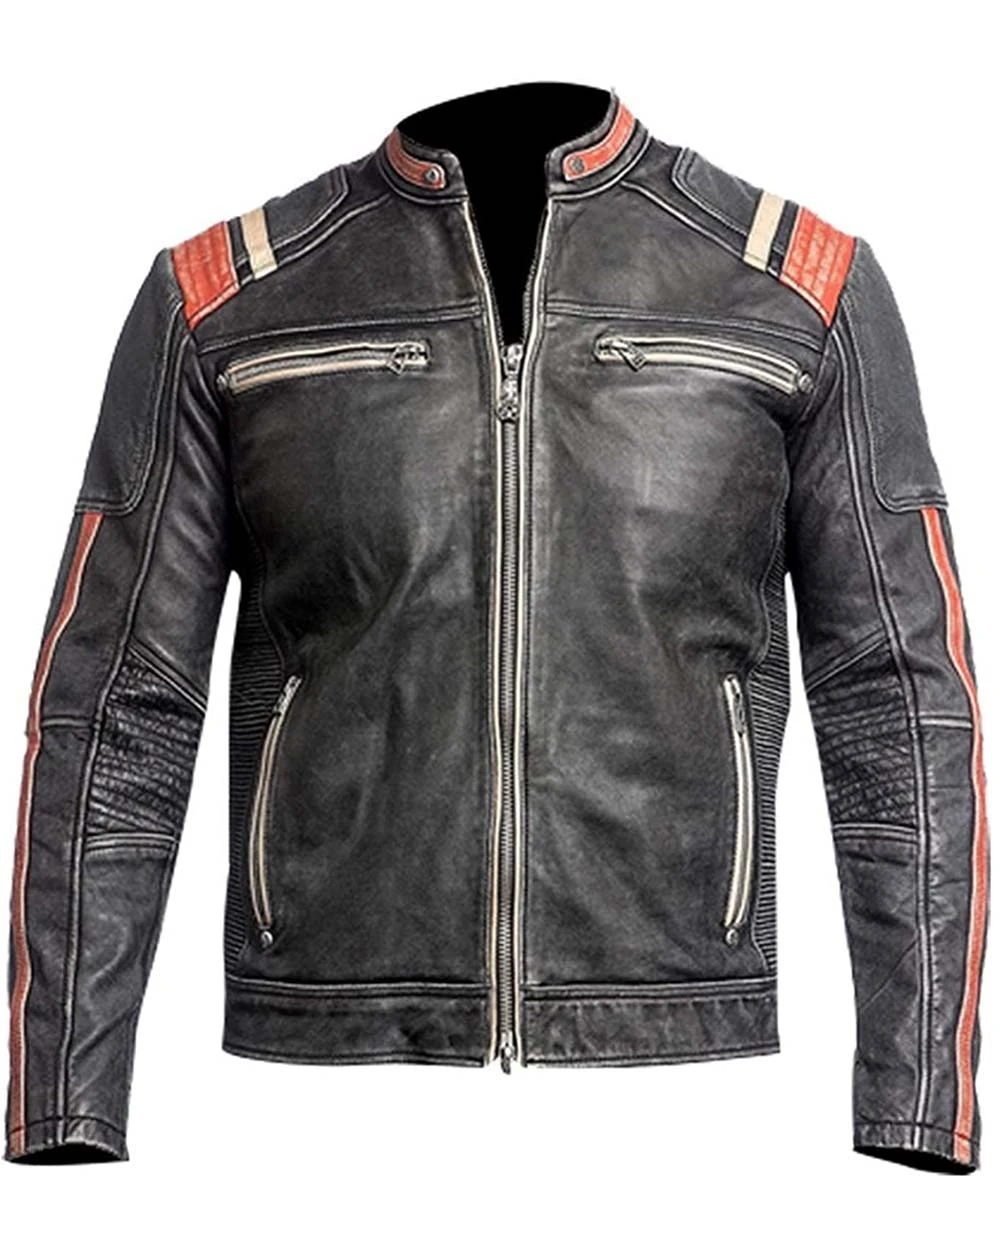 Buy Retro 3 Leather Jacket